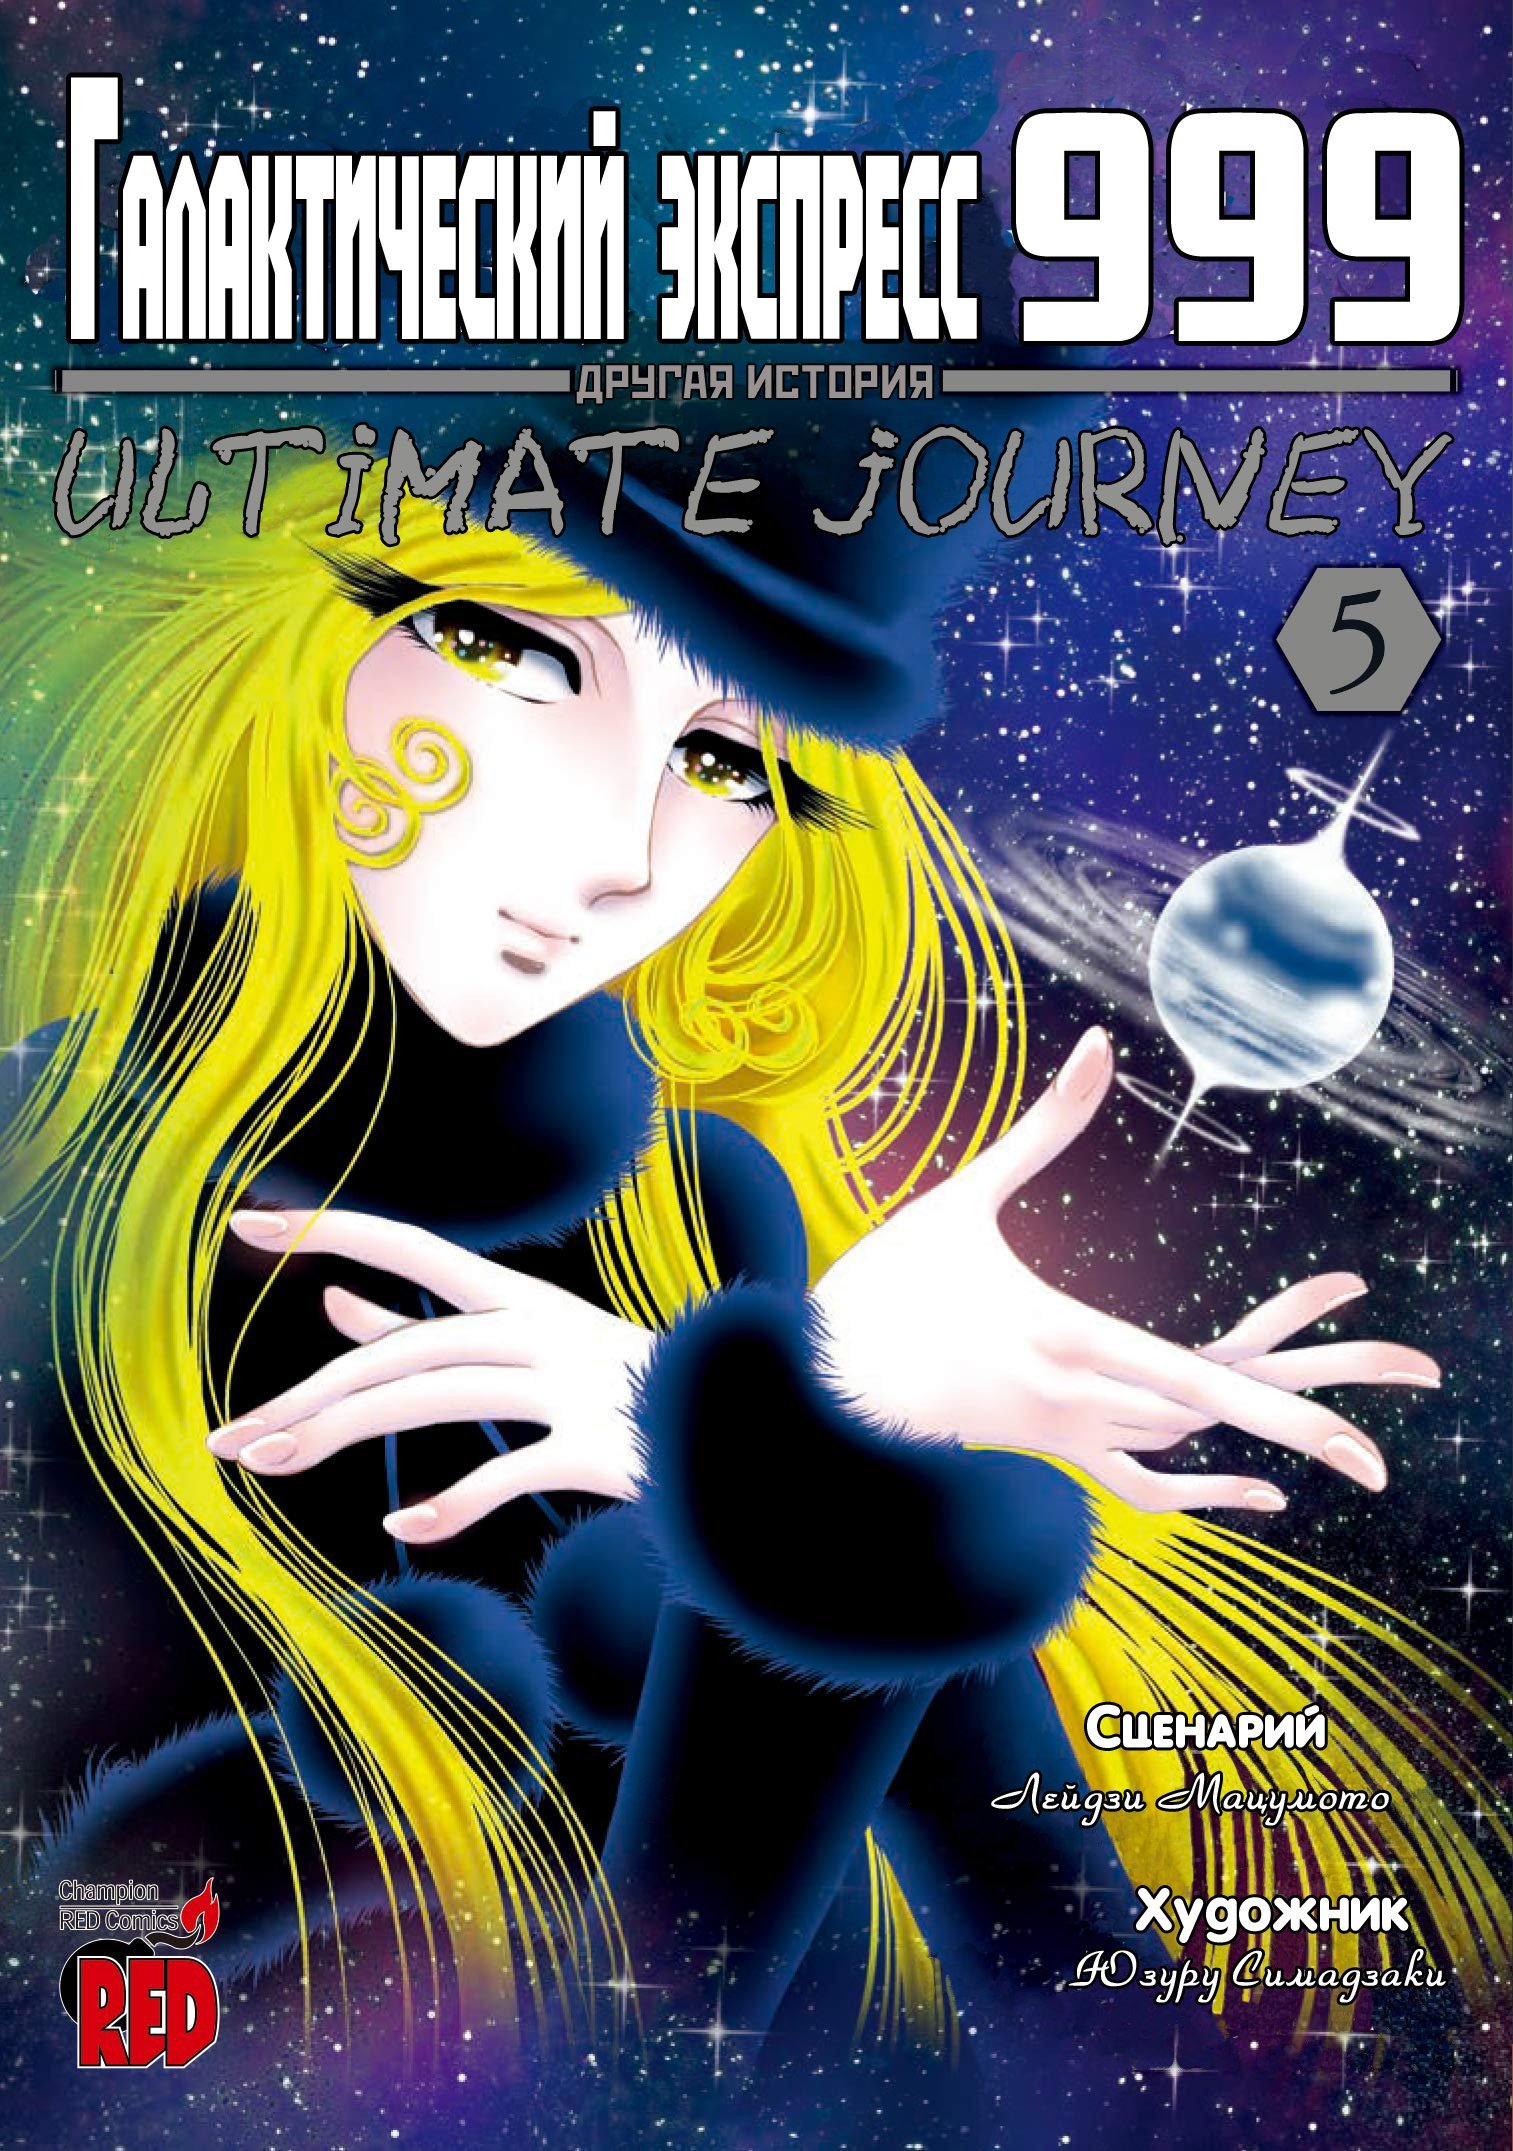 Манга Галактический экспресс 999 - Другая история: Ultimate Journey - Глава 21 Страница 1